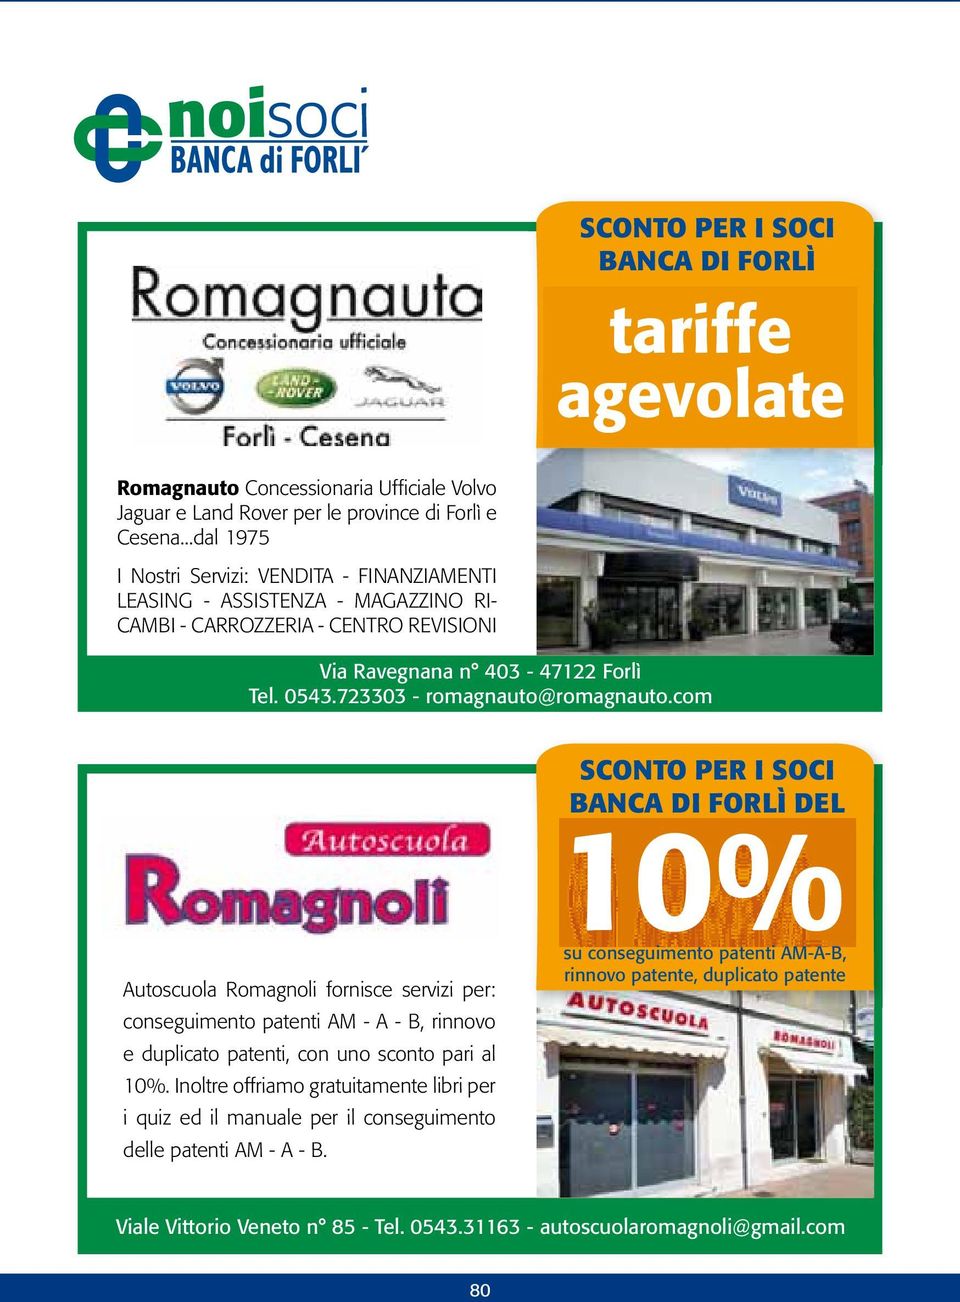 723303 - romagnauto@romagnauto.com SCONTO PER I SOCI 10% Autoscuola Romagnoli fornisce servizi per: conseguimento patenti AM - A - B, rinnovo e duplicato patenti, con uno sconto pari al 10%.